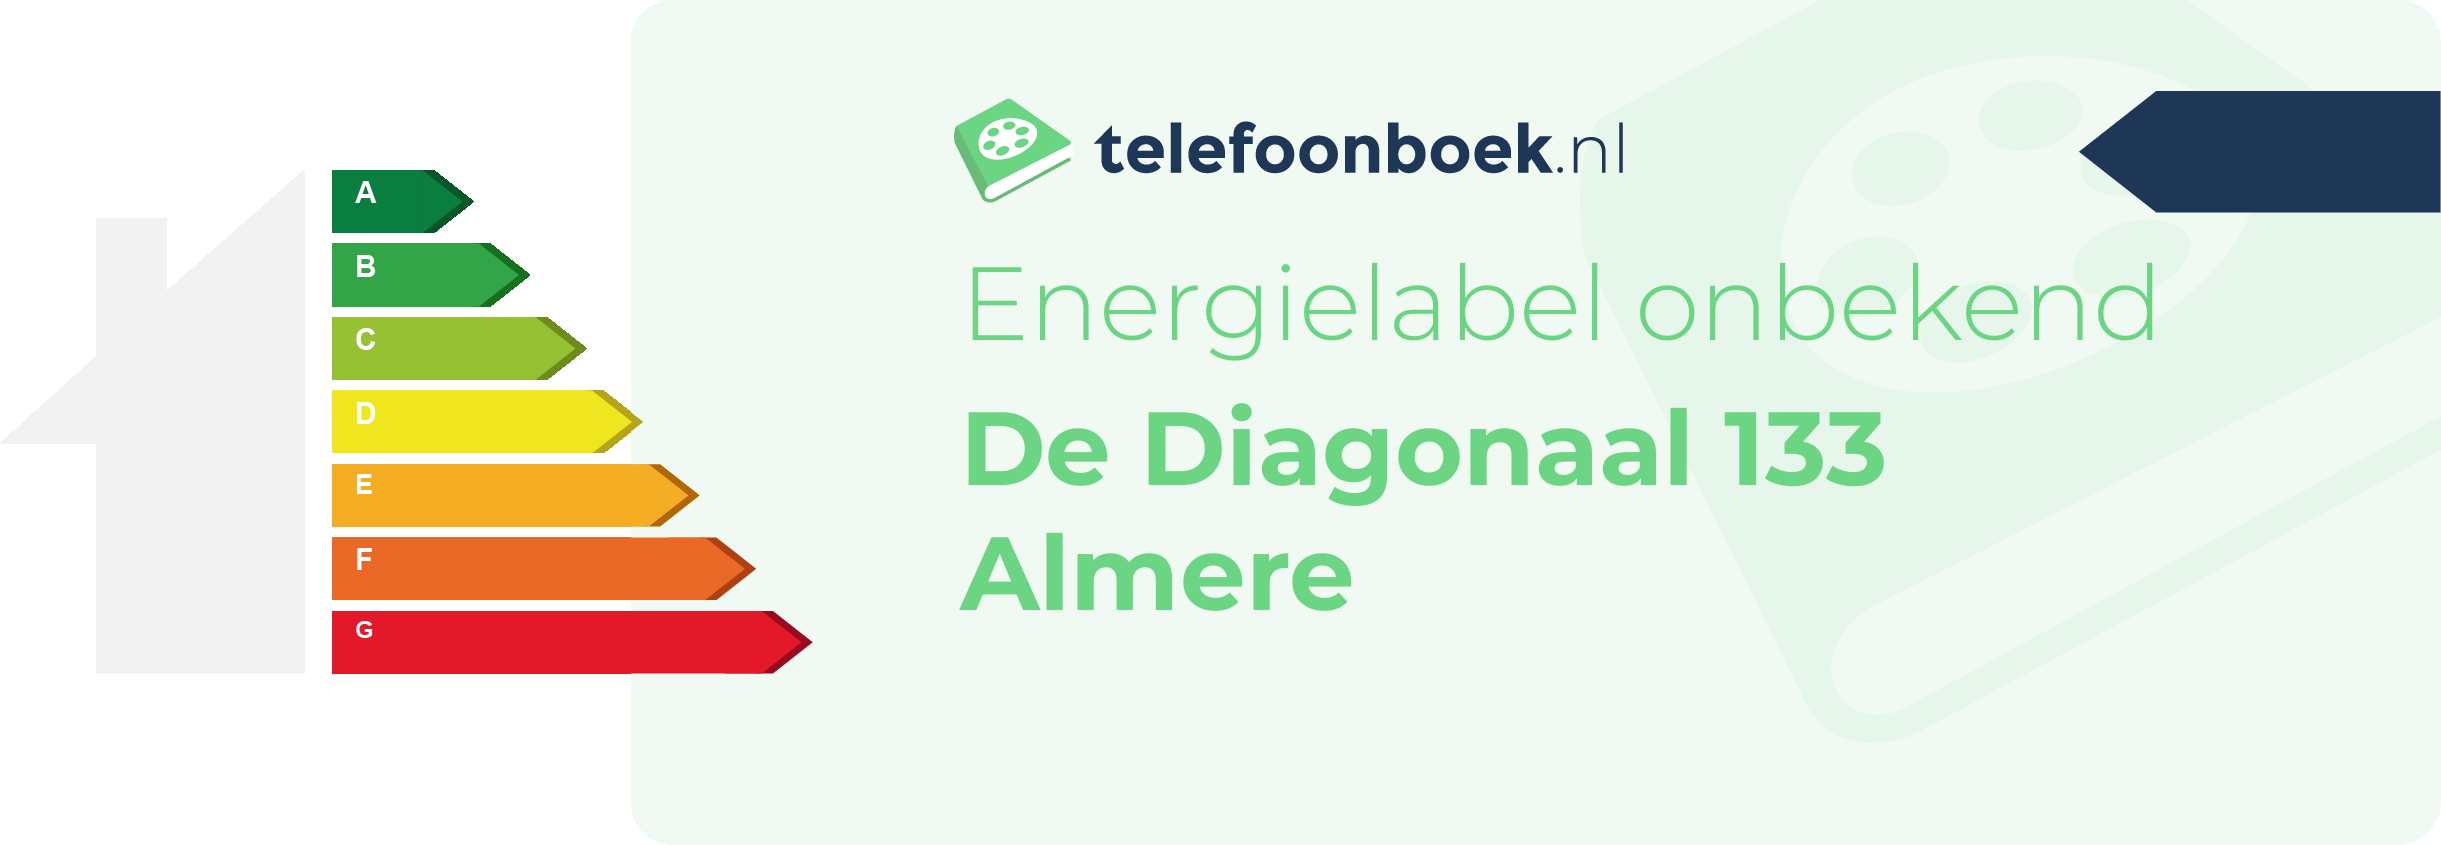 Energielabel De Diagonaal 133 Almere